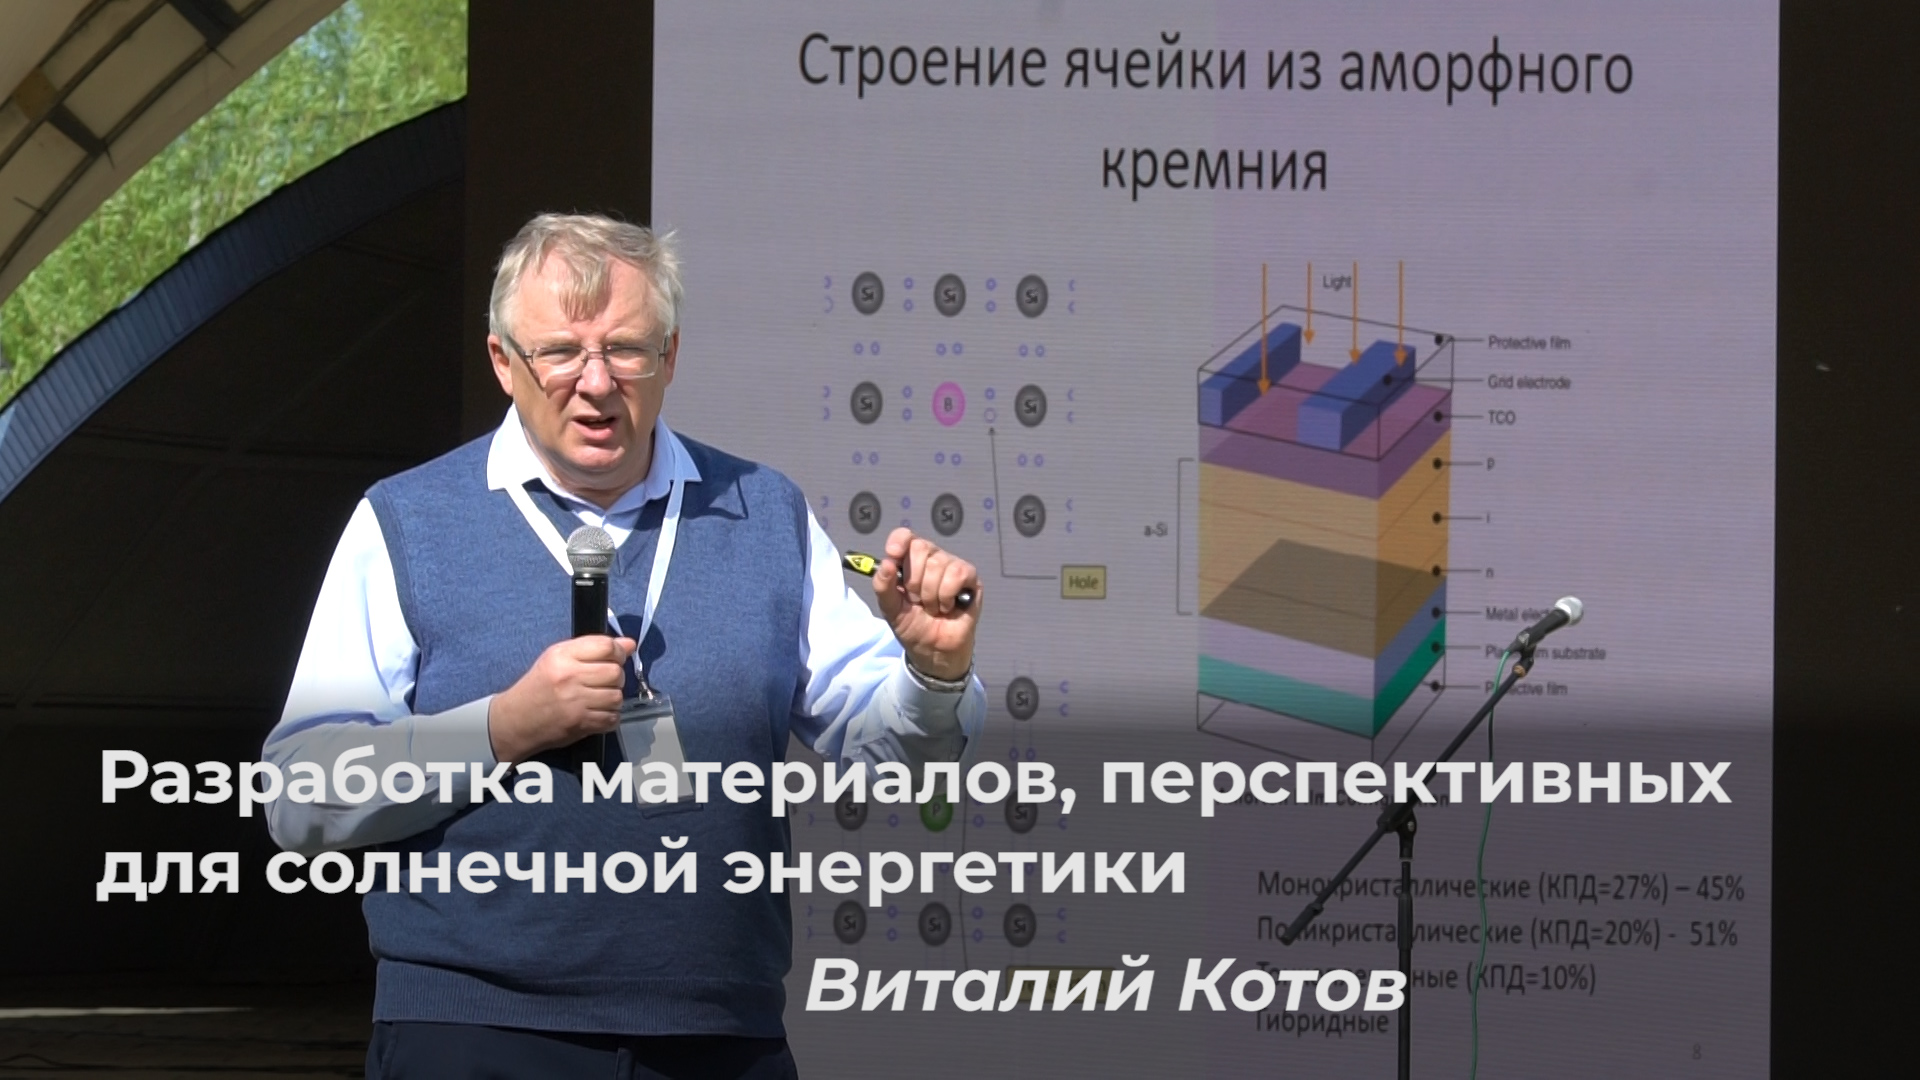 Виталий Котов – Разработка материалов, перспективных для солнечной энергетики